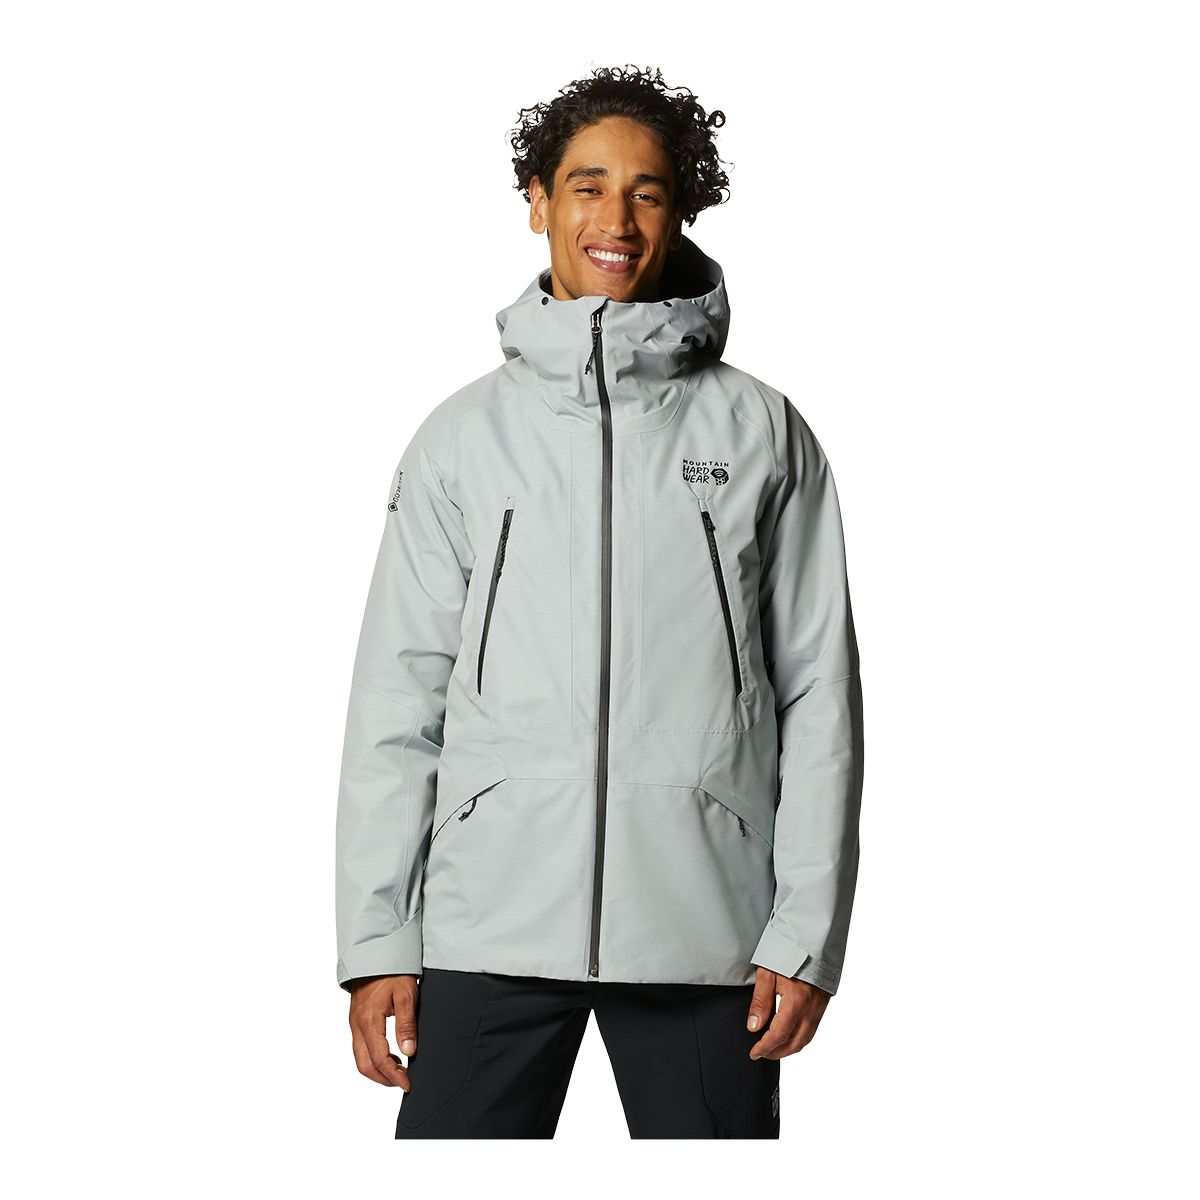 Mountain Hardwear - Sky Ridge GoreTex Jacket - Men's